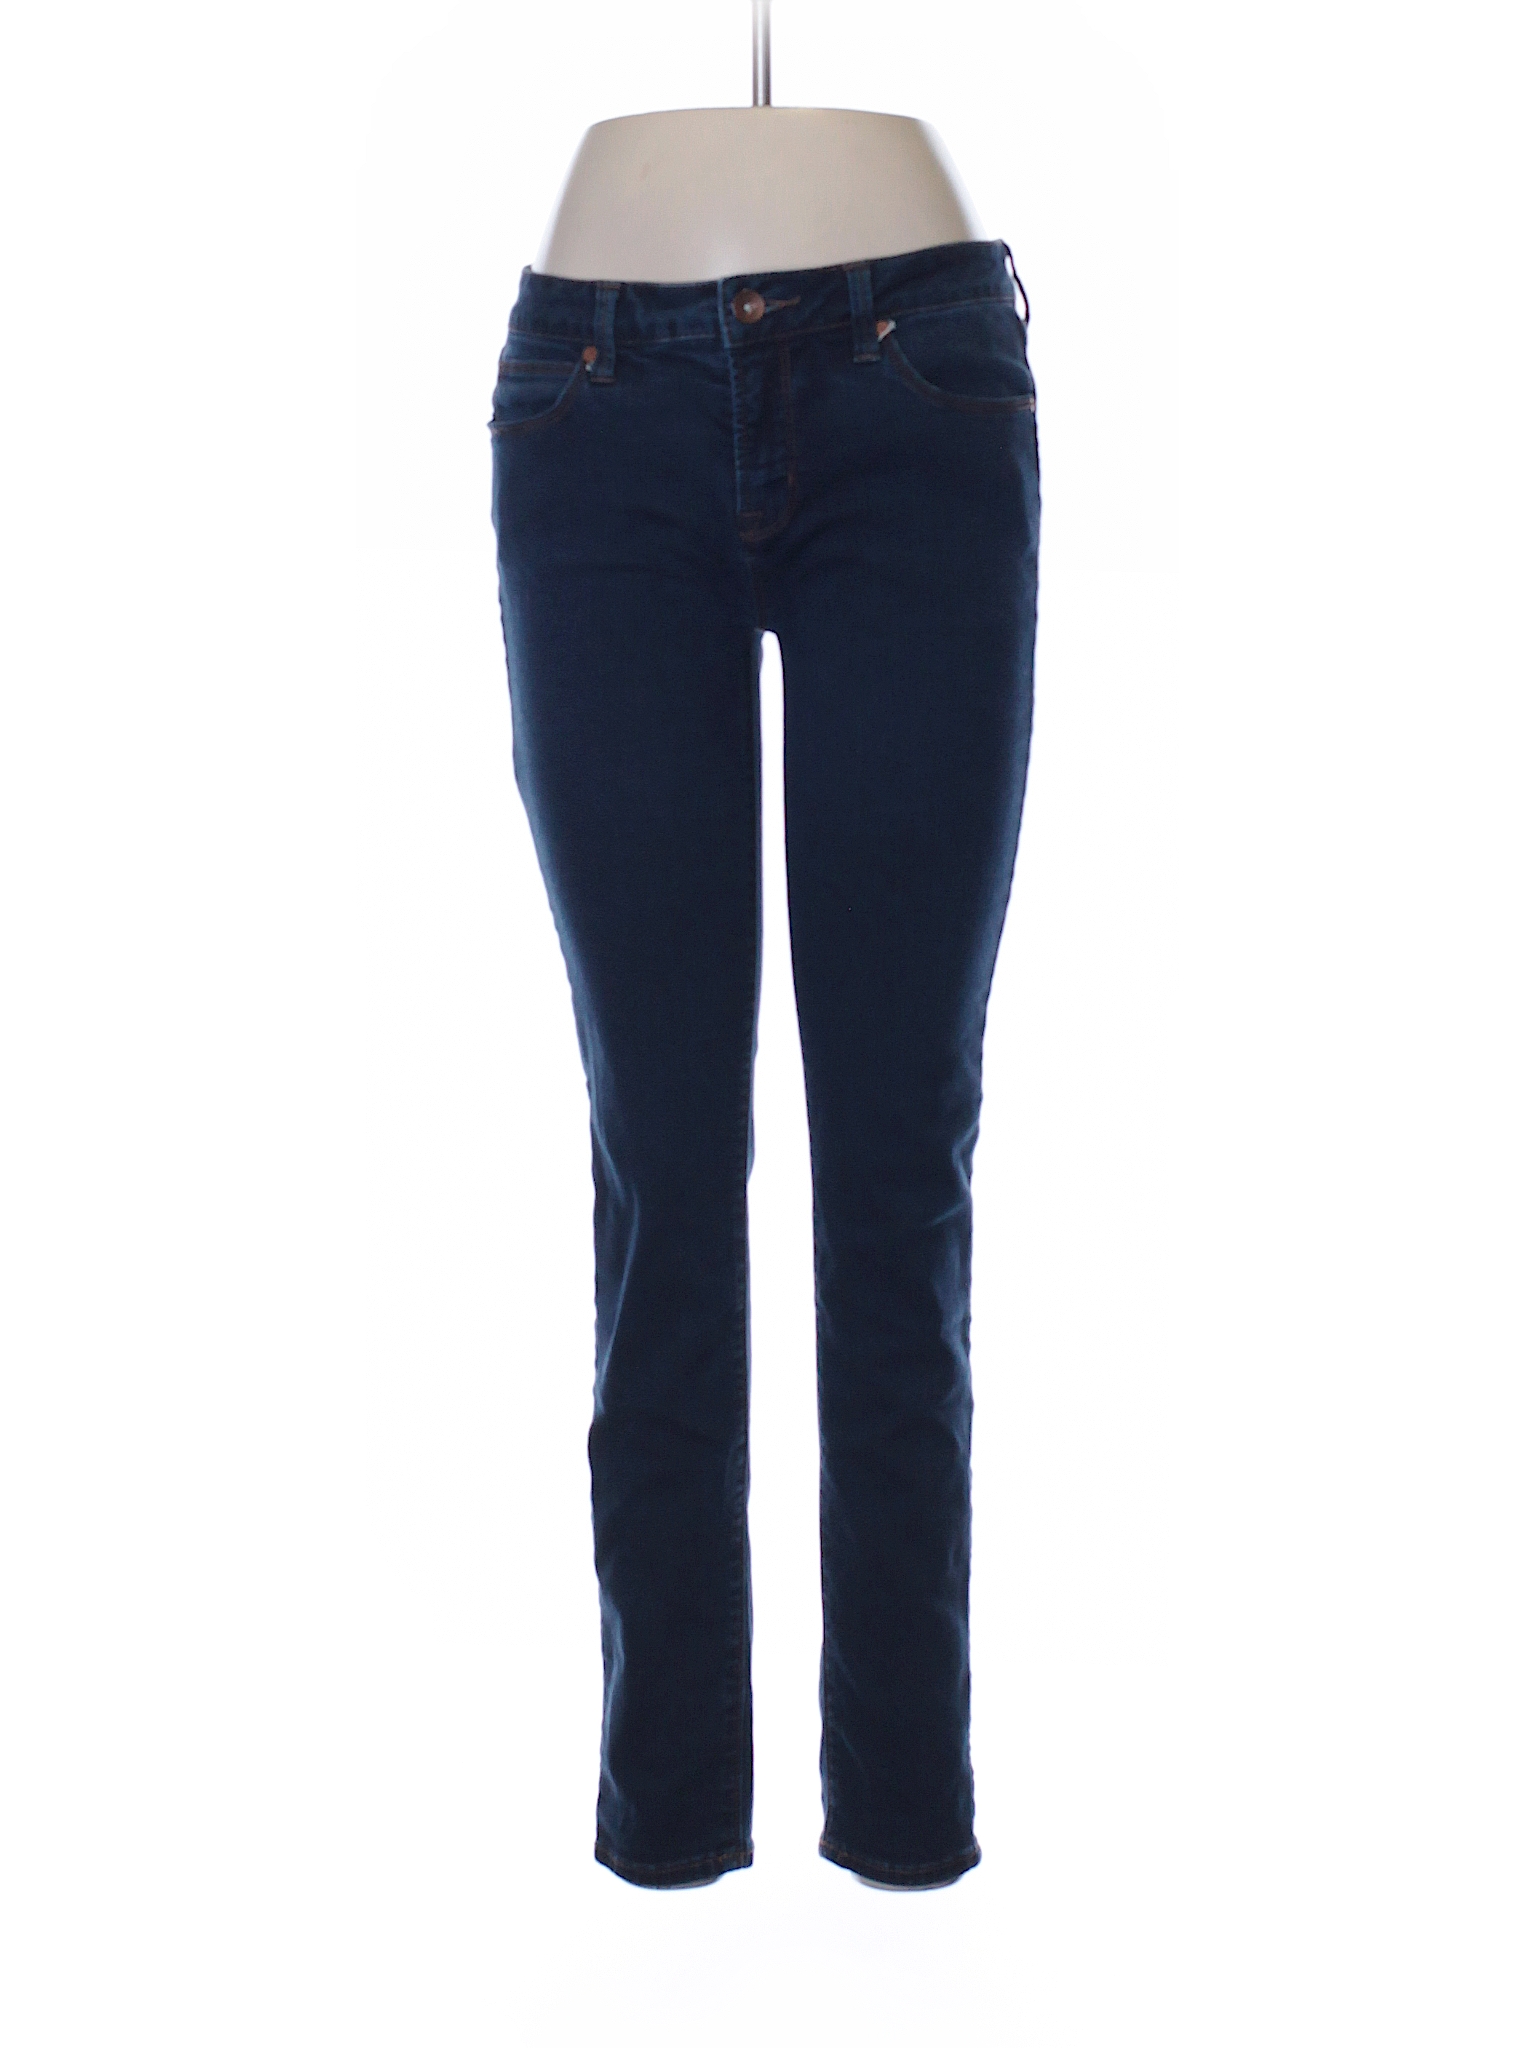 Jcpenney Solid Dark Blue Jeans 29 Waist - 70% off | thredUP